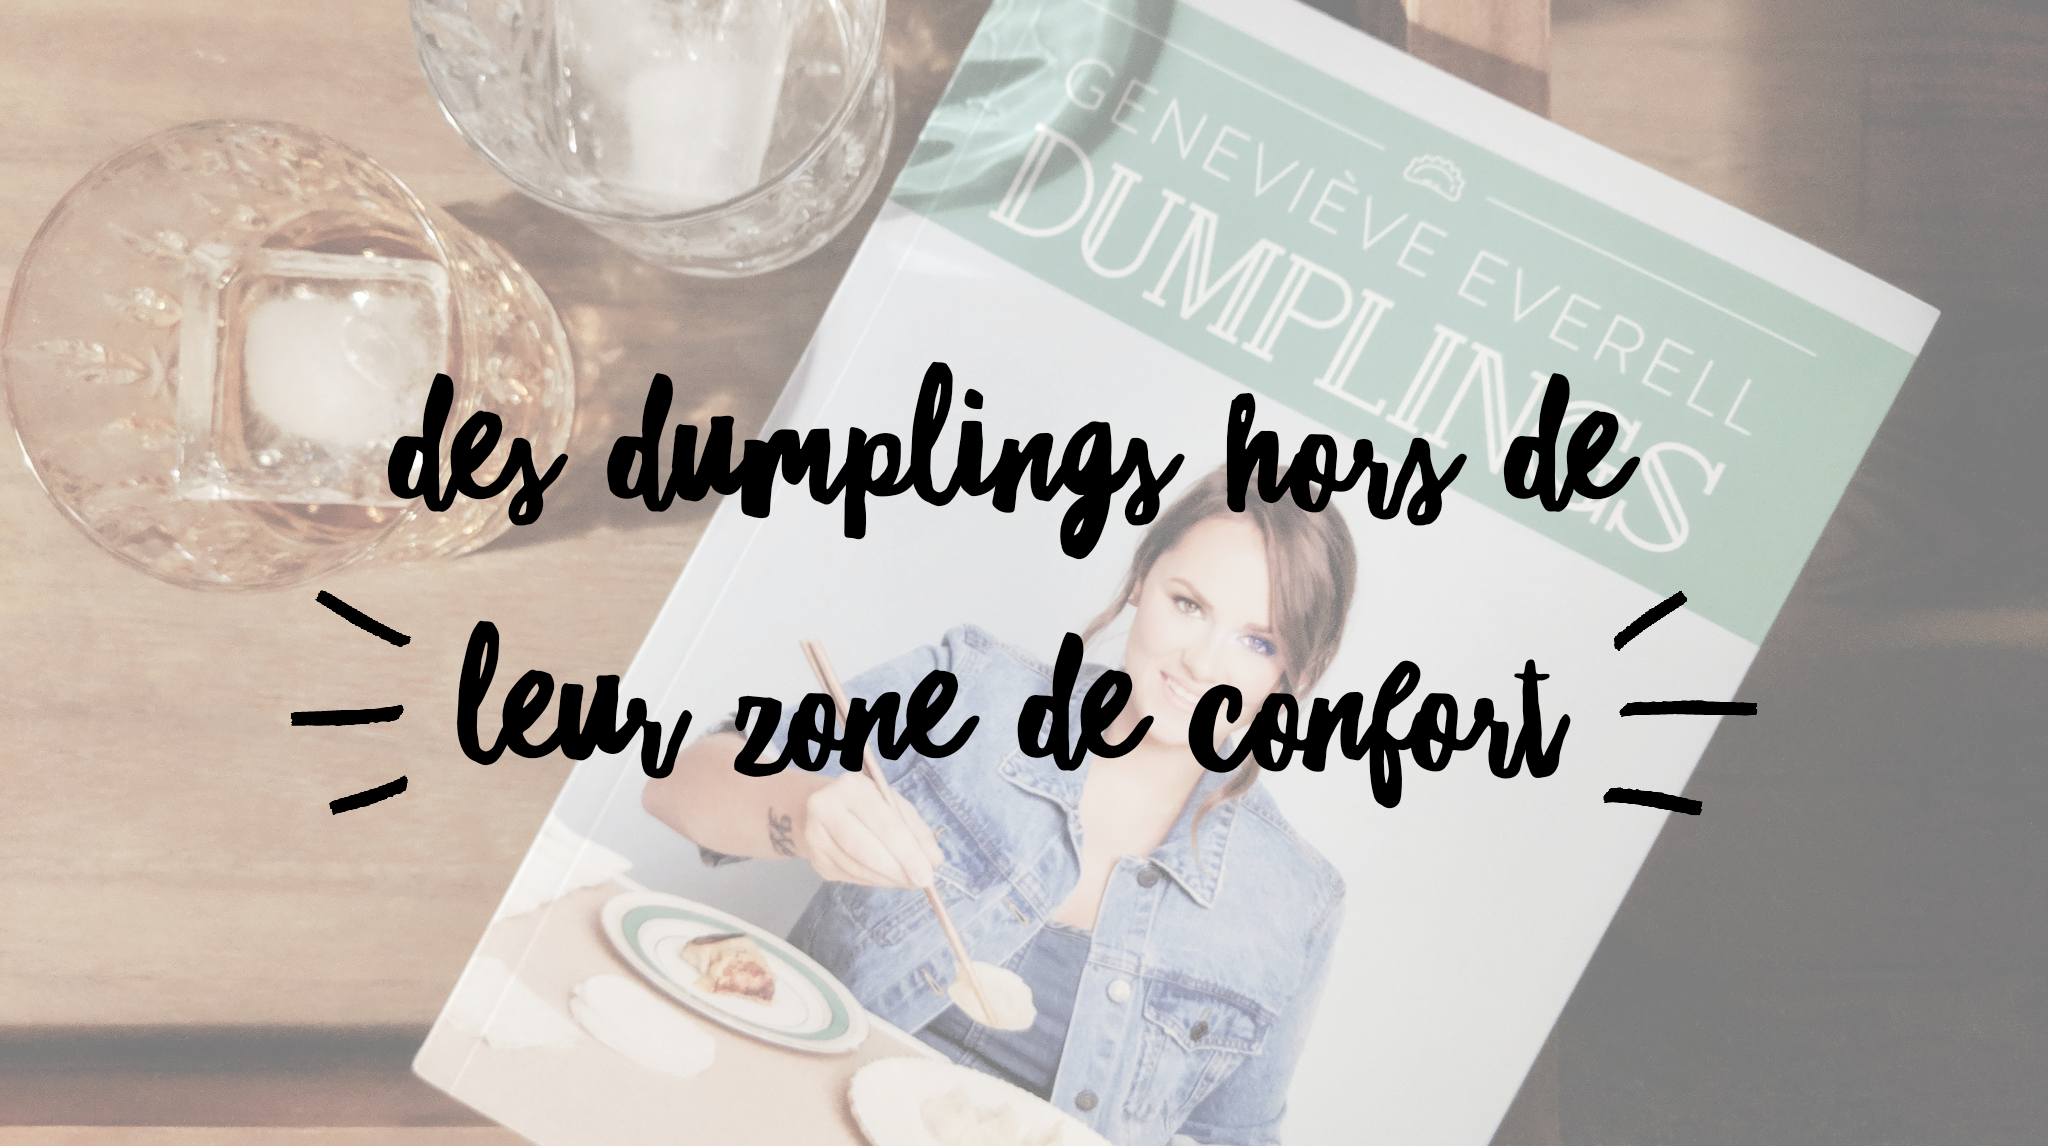 Le nouveau livre de dumplings de Geneviève Everell